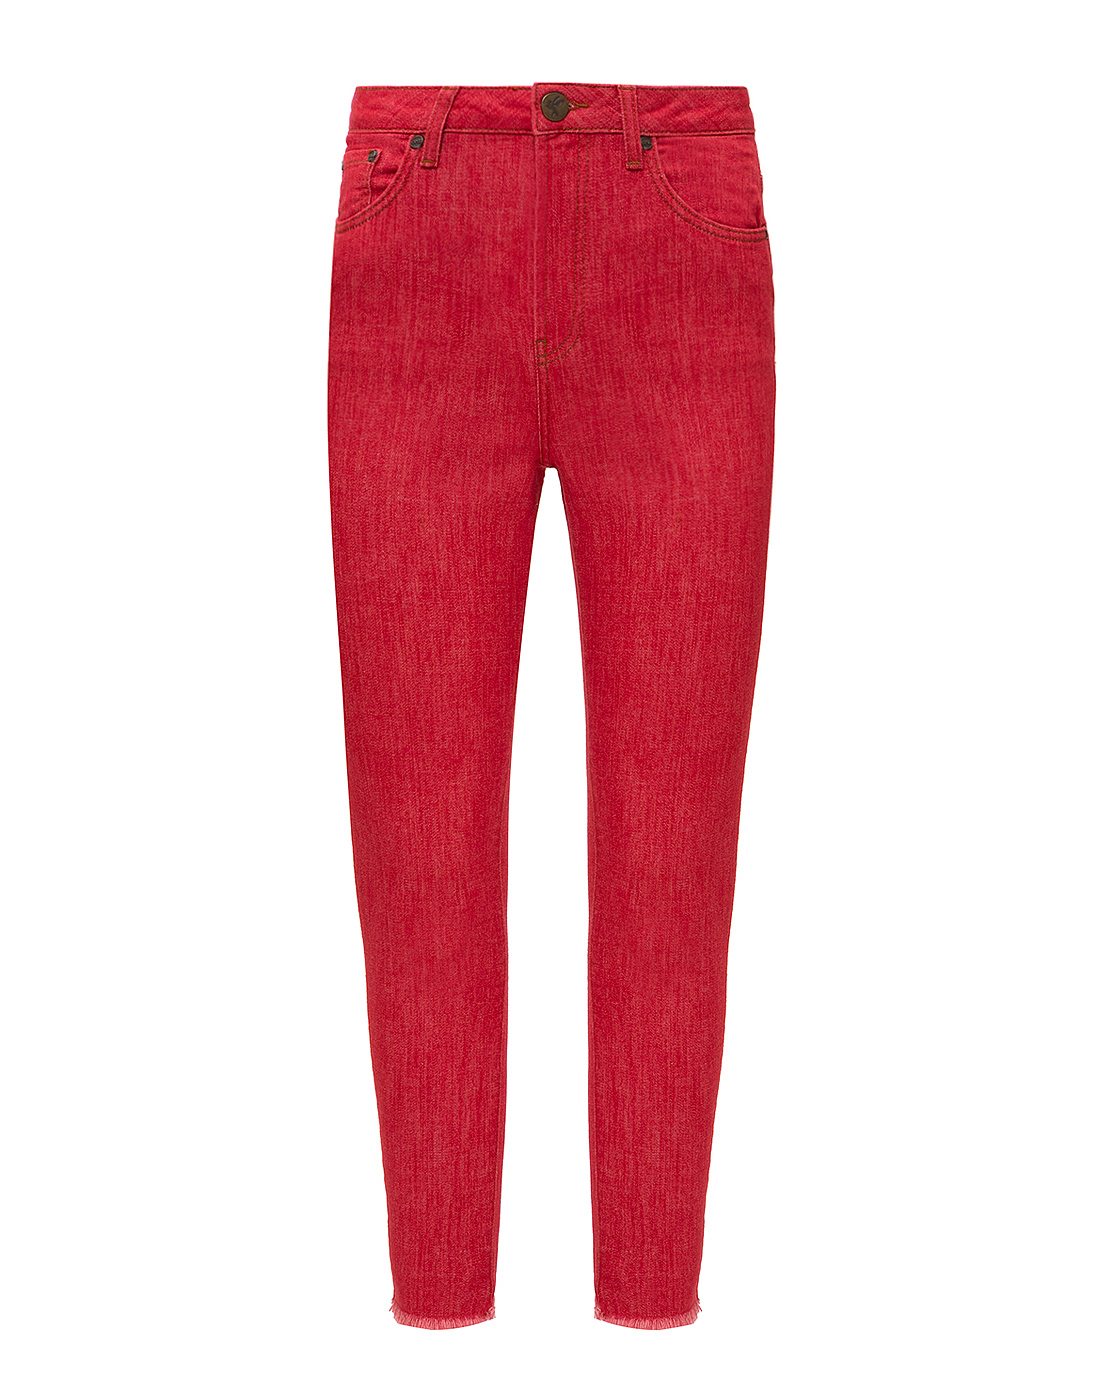 Женские красные джинсы Oneteaspoon S21926-1